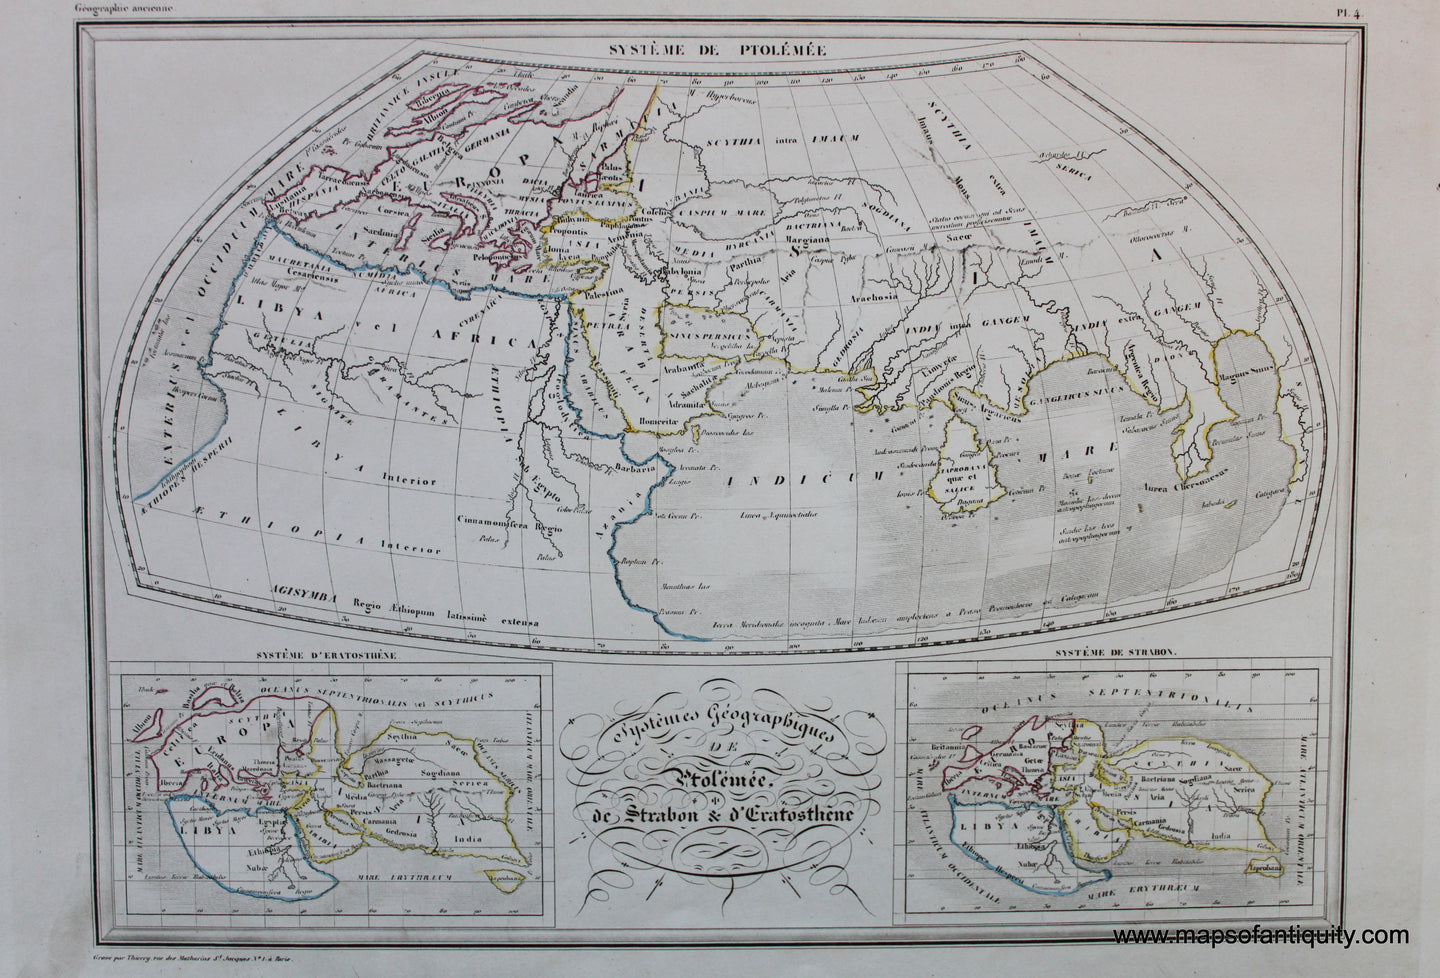 Antique-Hand-Colored-Map-Systemes-Geographiques-de-Ptolemee-de-Strabon-et-d'Eratosthene-World--1846-M.-Malte-Brun-Maps-Of-Antiquity